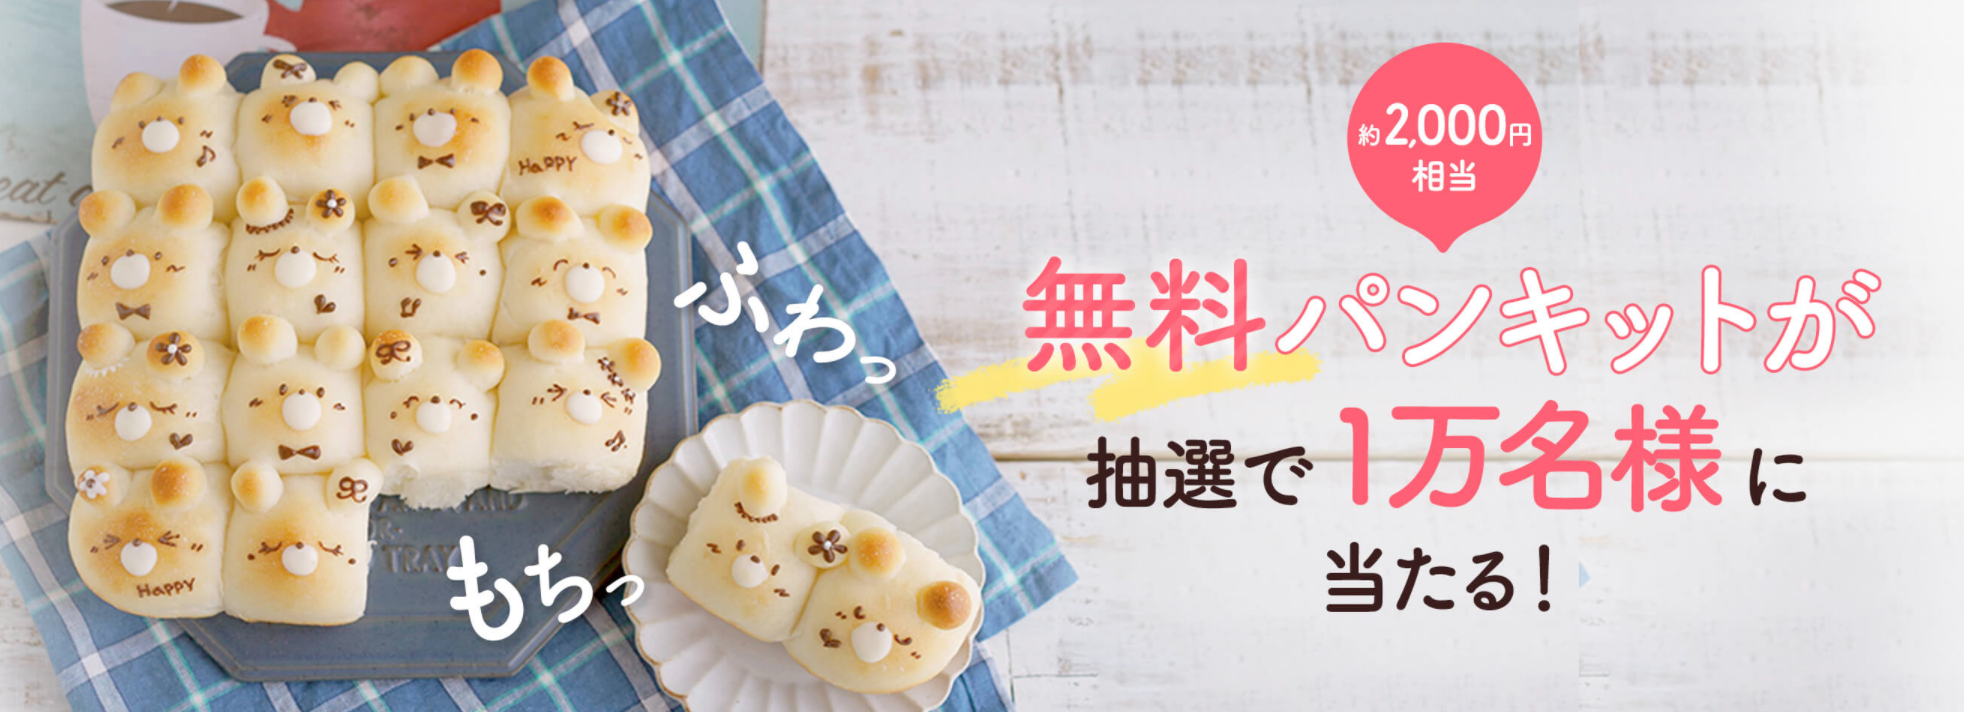 コッタ無料パンキット1万人プレゼント クマさんのちぎりパンが作れる00円相当の特別キット ベビヨリ